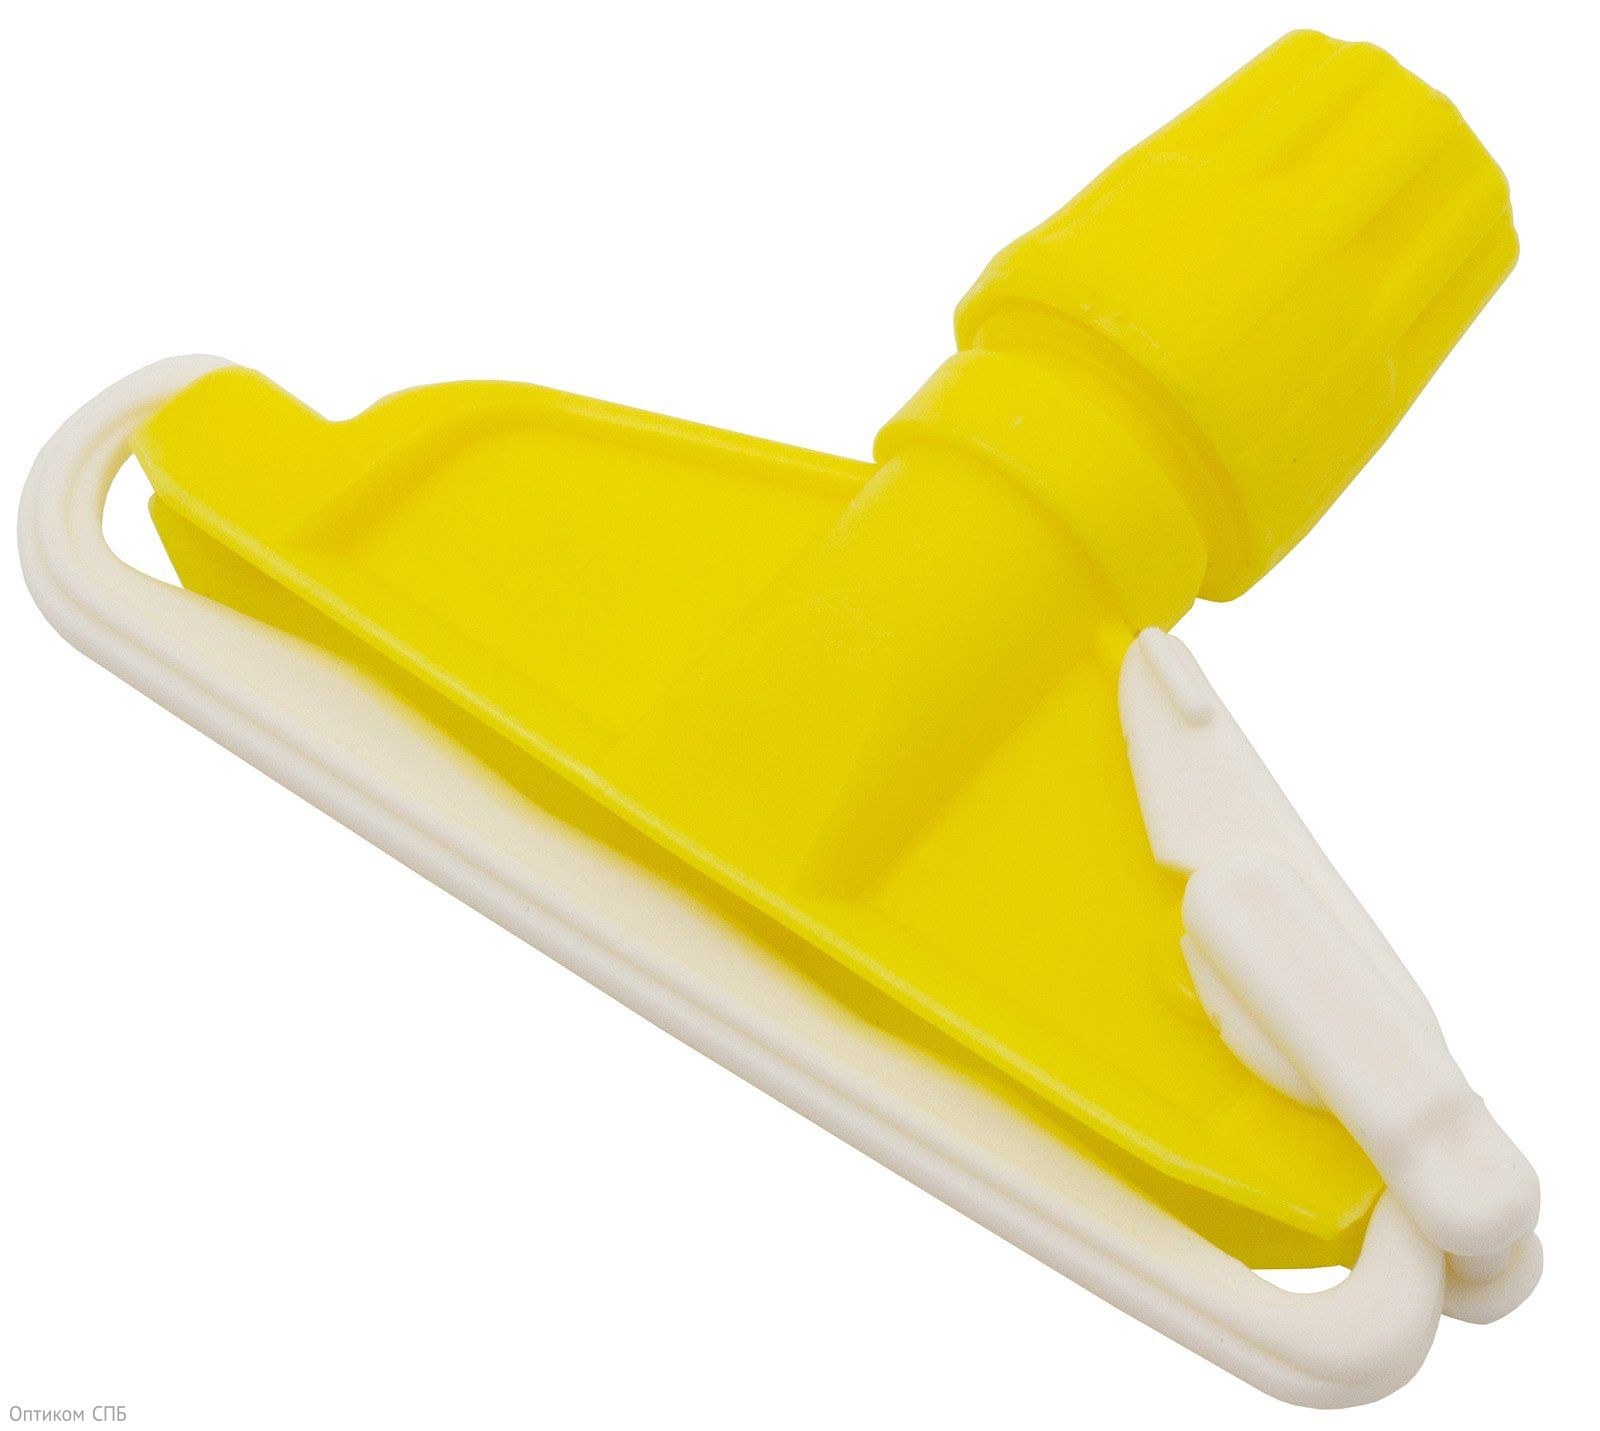 Зажим для мопа кентукки Optiline применяется для фиксации мопа кентукки. Выполнен из противоударного пластика желтого цвета, устойчив к агрессивным моющим средствам. Предназначен для проведения влажной уборки внутренних помещений. Подходит для рукояток с фиксаторным креплением. Поставляется в индивидуальном прозрачном пакете.